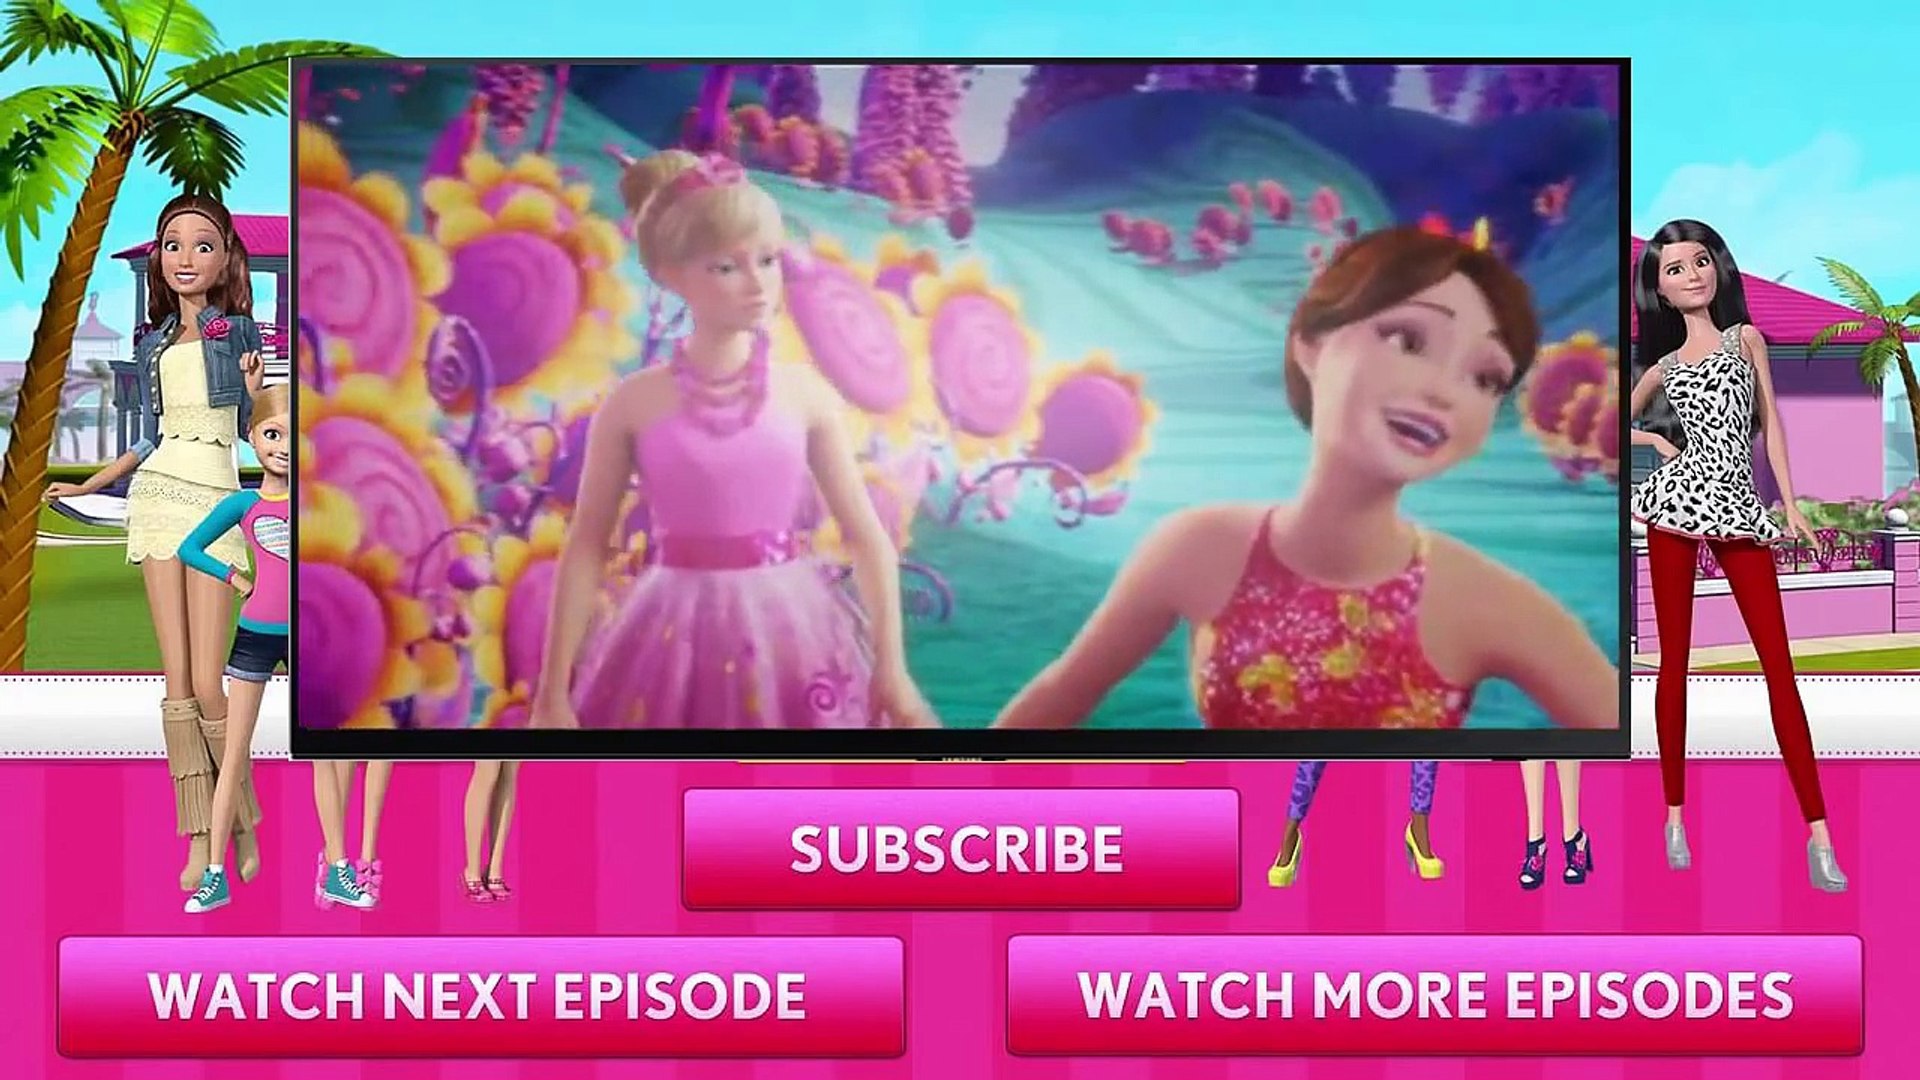 Barbie En Español Y La Puerta Secreta 2014 - Dailymotion Video